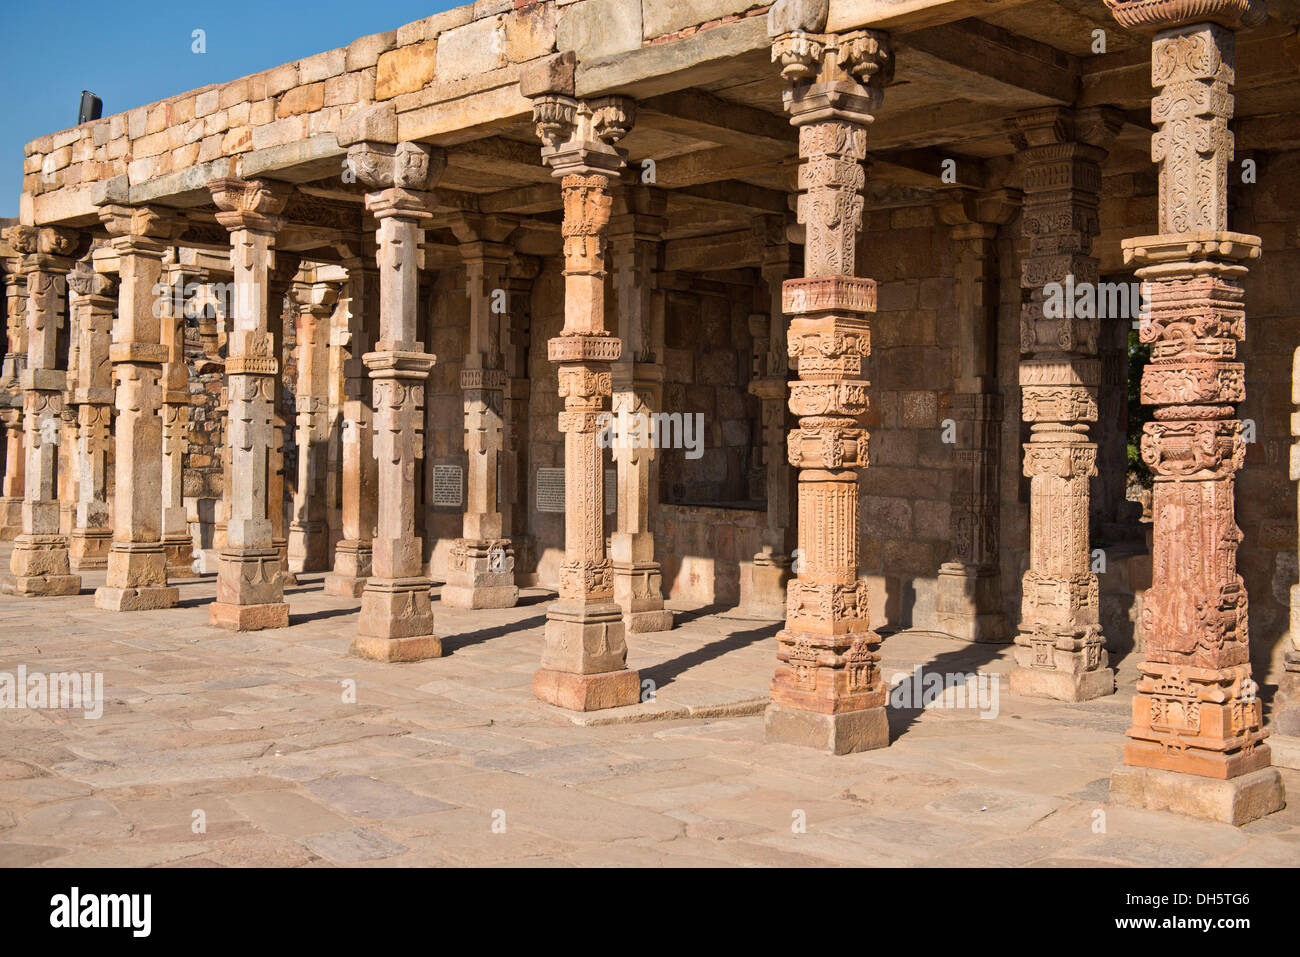 Mosquée islamique avec des colonnes construite de la destruction des temples hindous, le Qûtb Minâr ou Qutb Minar, UNESCO World Heritage Site, Delhi Banque D'Images